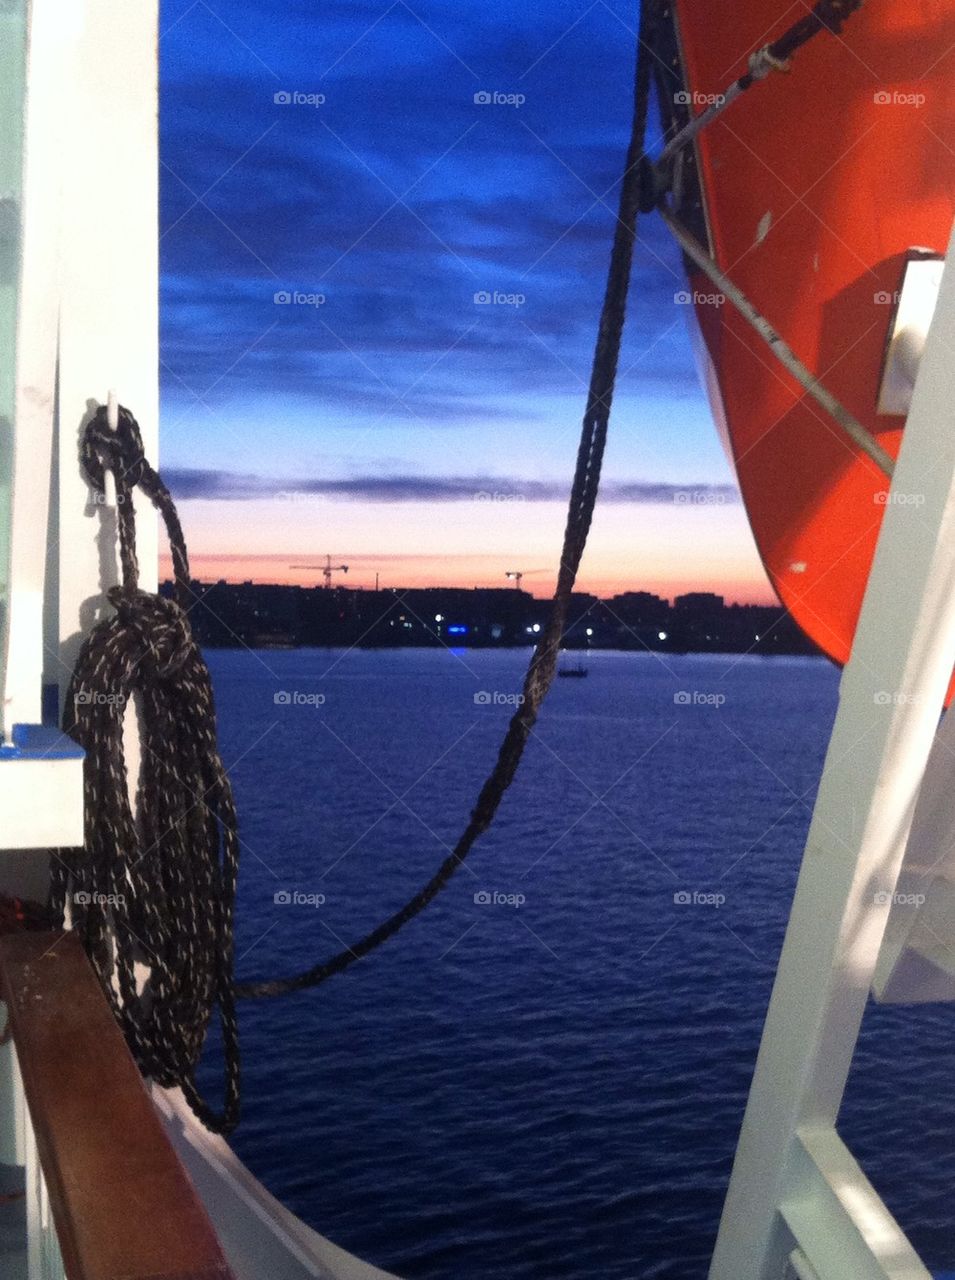 Sunset onboard near Lauttasaari, Helsinki Finland.